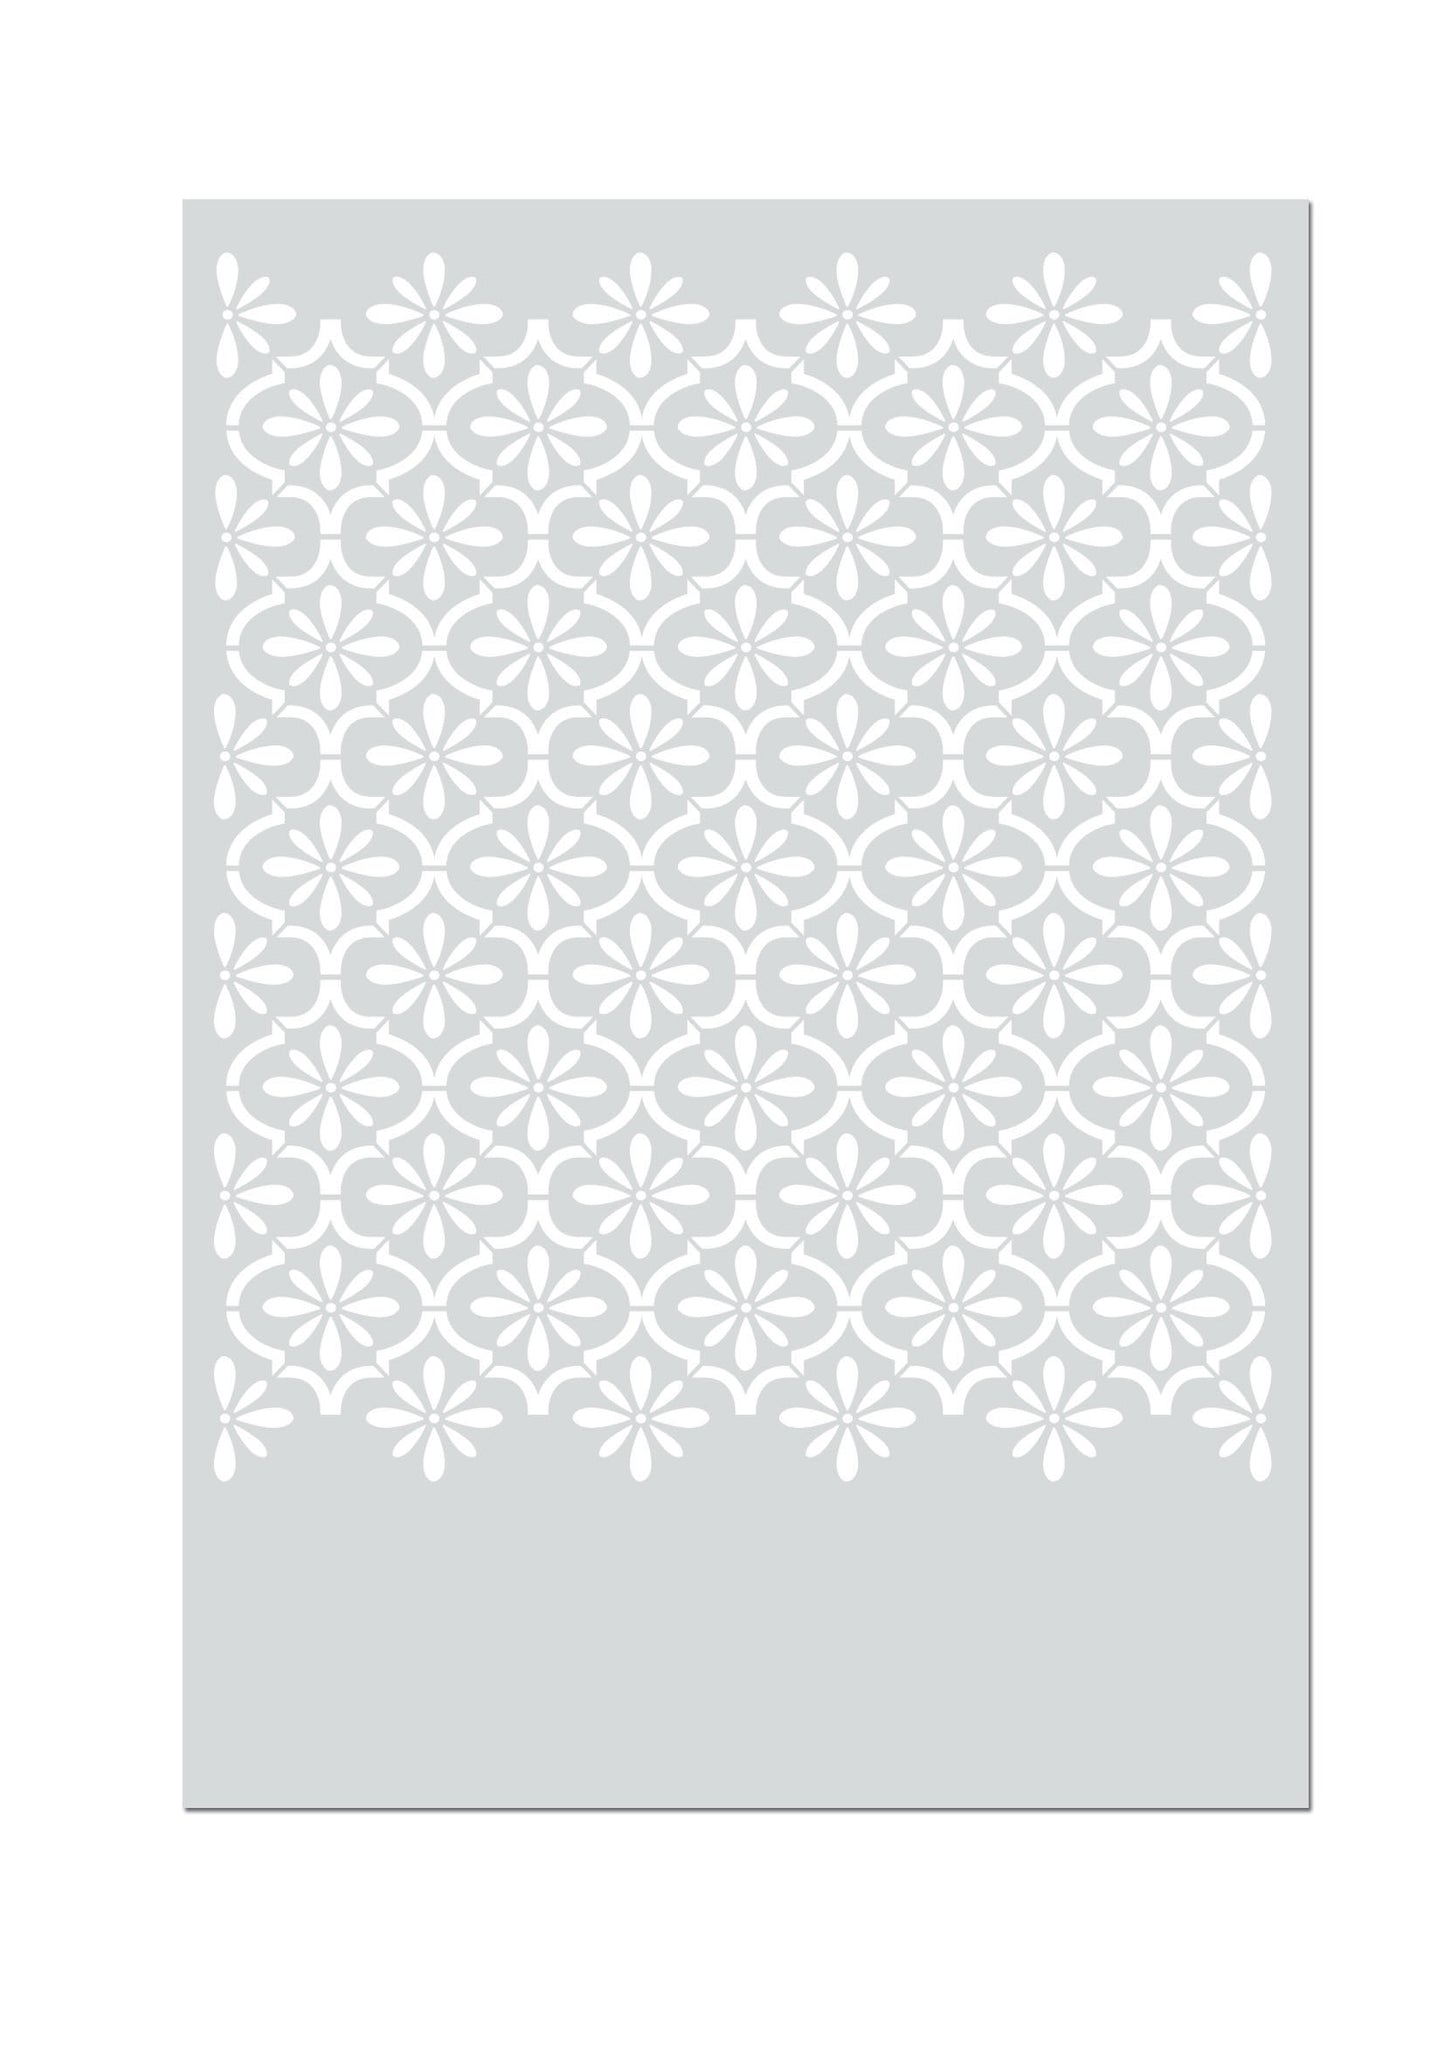 AGADIR - Marokkanische Wandschablone - Schablone für Wand, Möbel, Textil